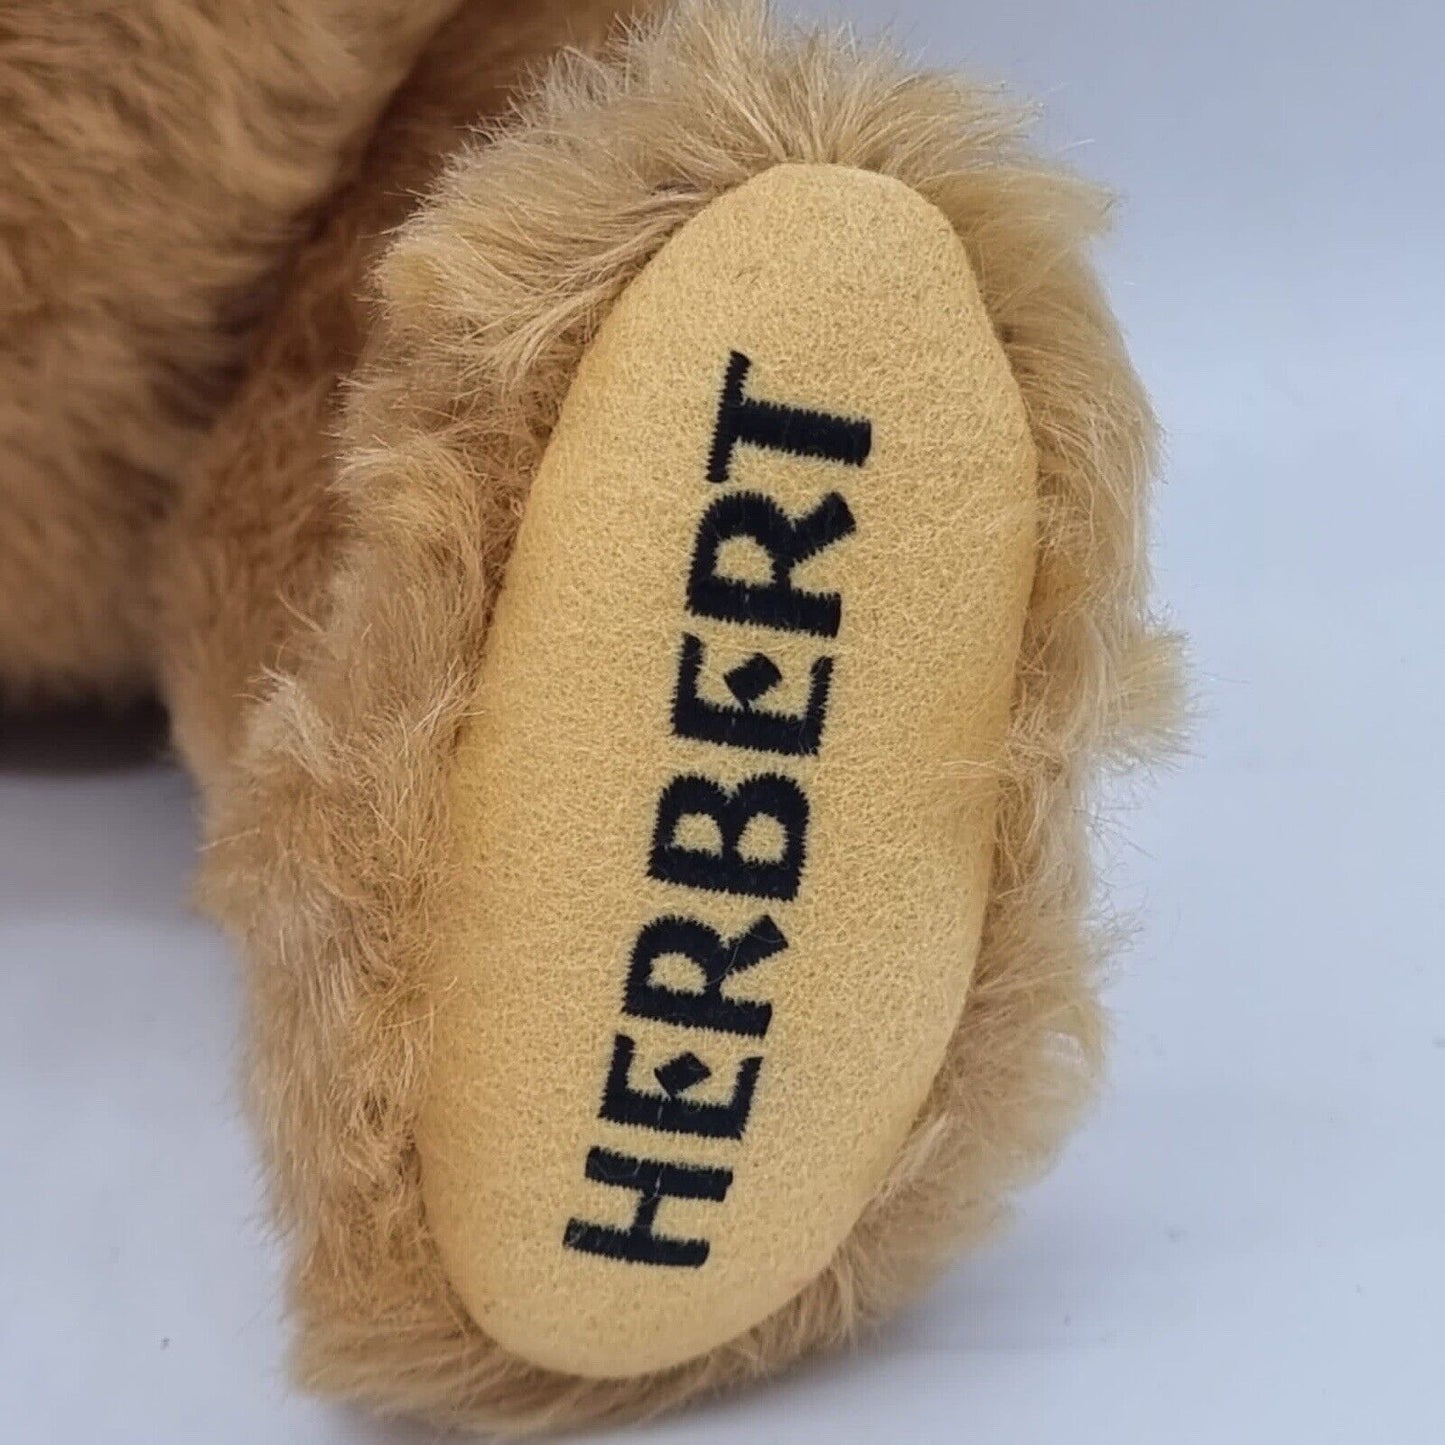 Steiff Teddybär Herbert 655395 limitiert 1500 Zertifikat 45 cm 1999 Kaufhof